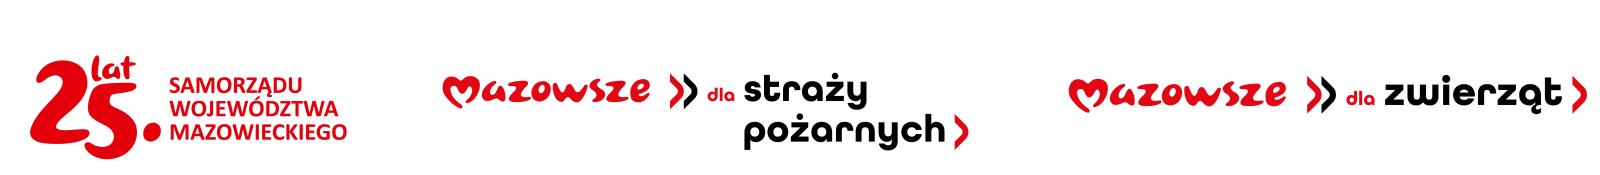 Logo: 25 lat Samorządu Województwa Mazowieckiego, Mazowsze dla straży pożarnych, Mazowsze dla zwierząt.